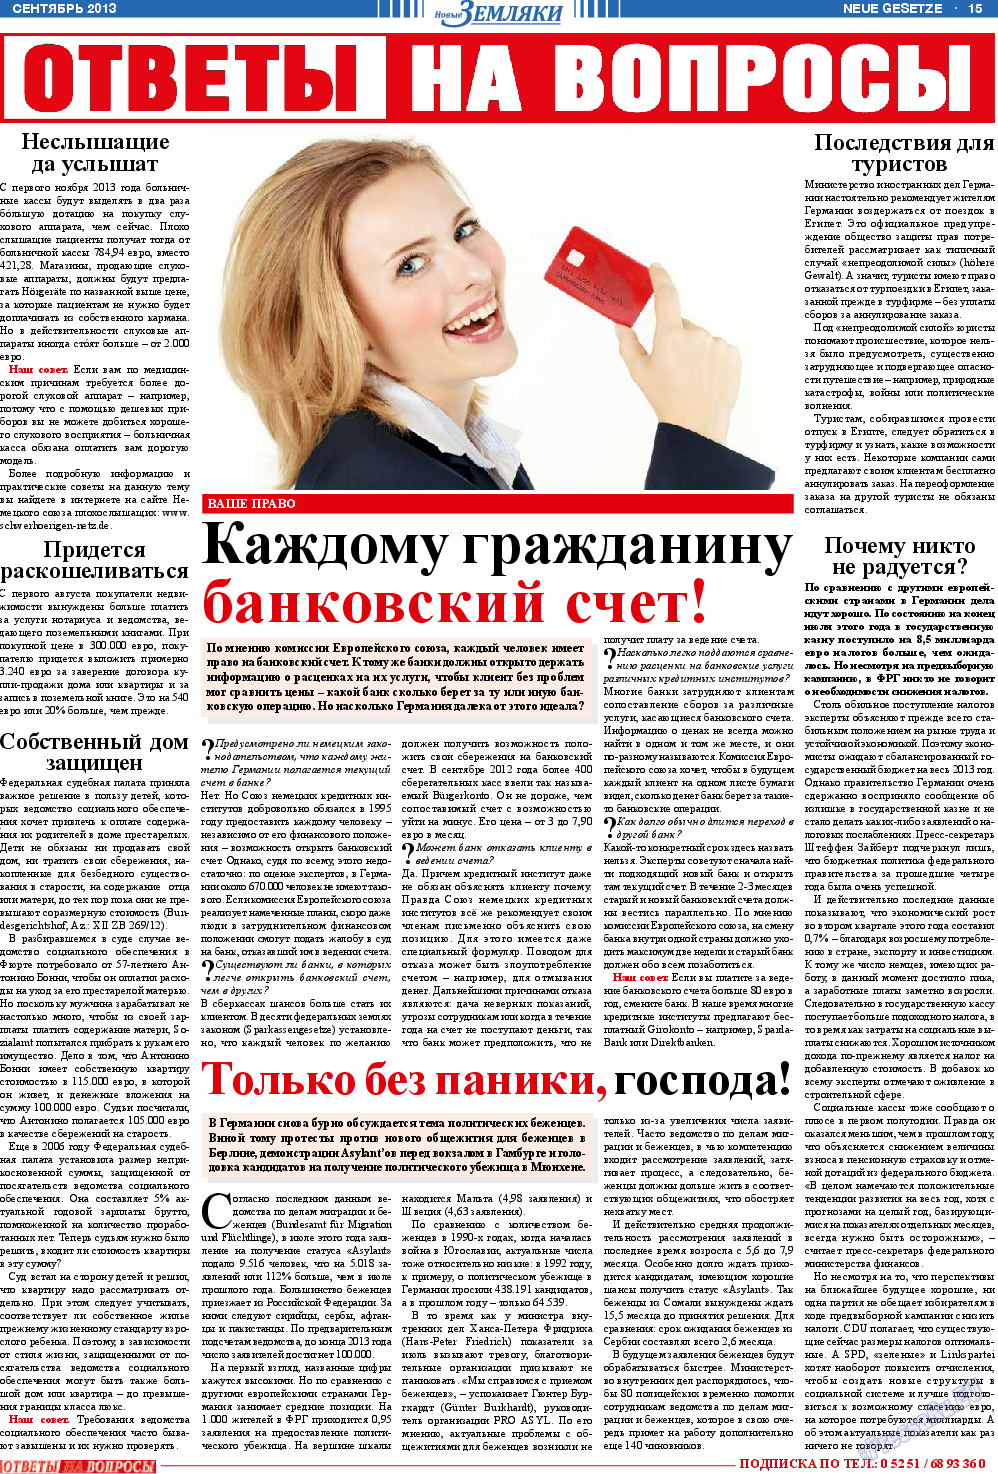 Новые Земляки, газета. 2013 №9 стр.15